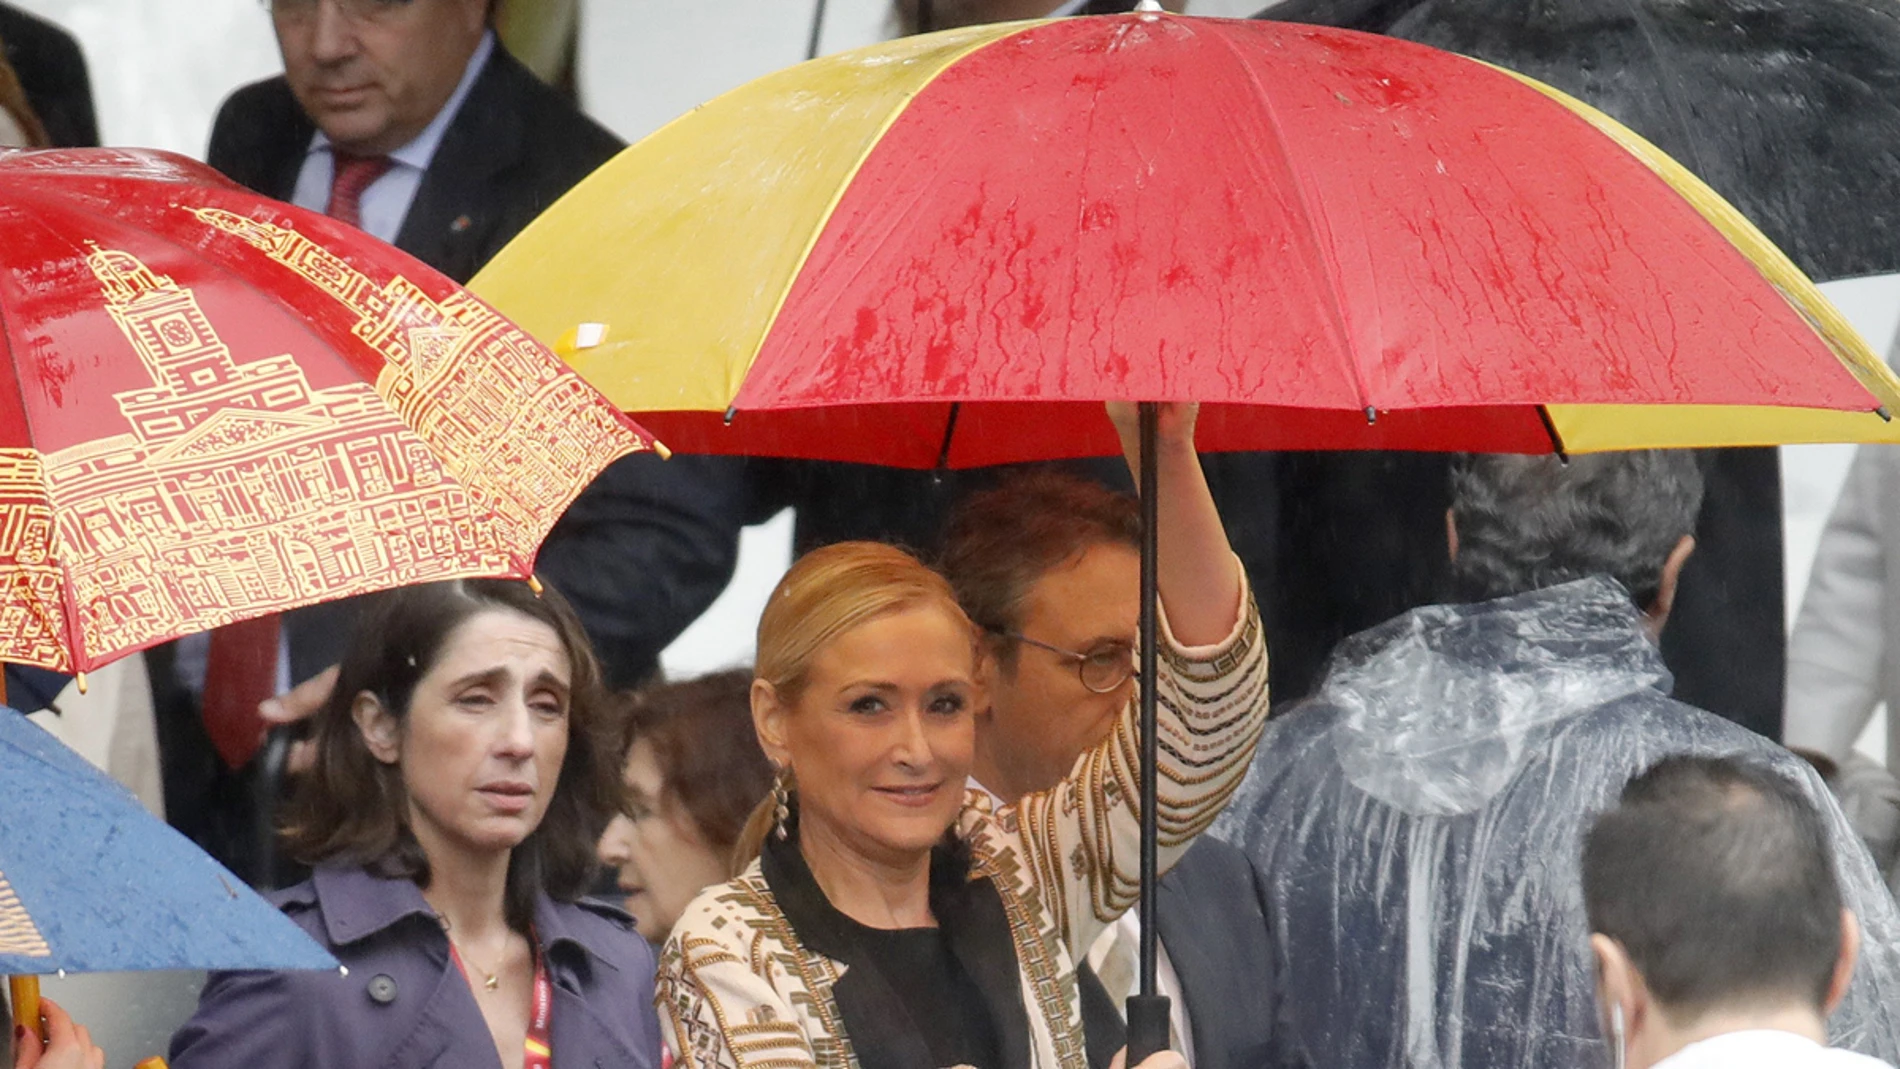 Cristina Cifuentes con un paraguas con la bandera de España